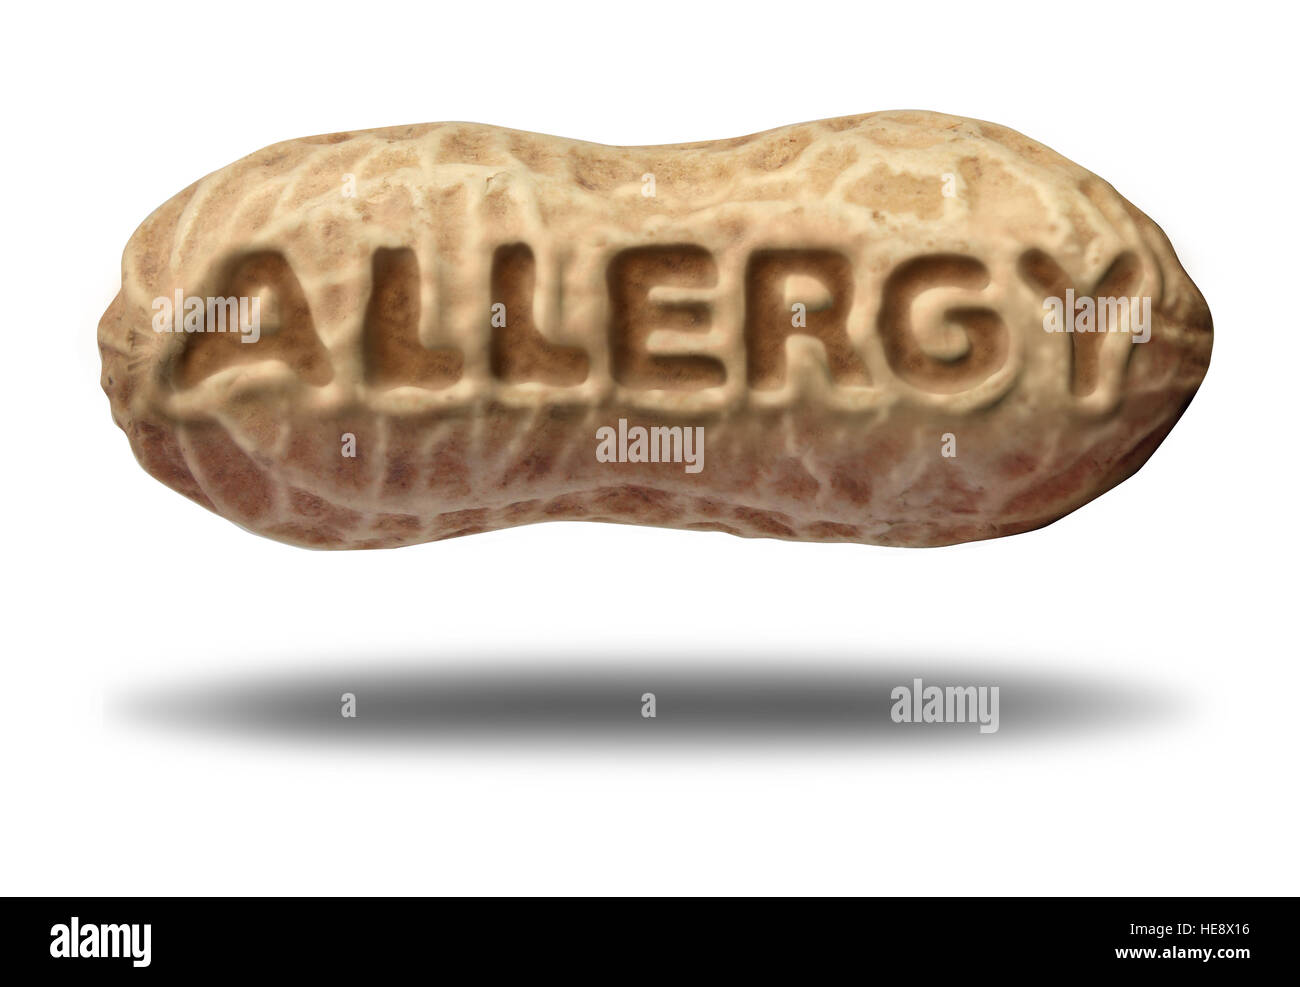 Allergia alle arachidi concetto e allergie dado simbolo medico con testo in rilievo in un ingrediente sgusciate come un allergene avvertimento con 3D'elemento di illustrazione Foto Stock